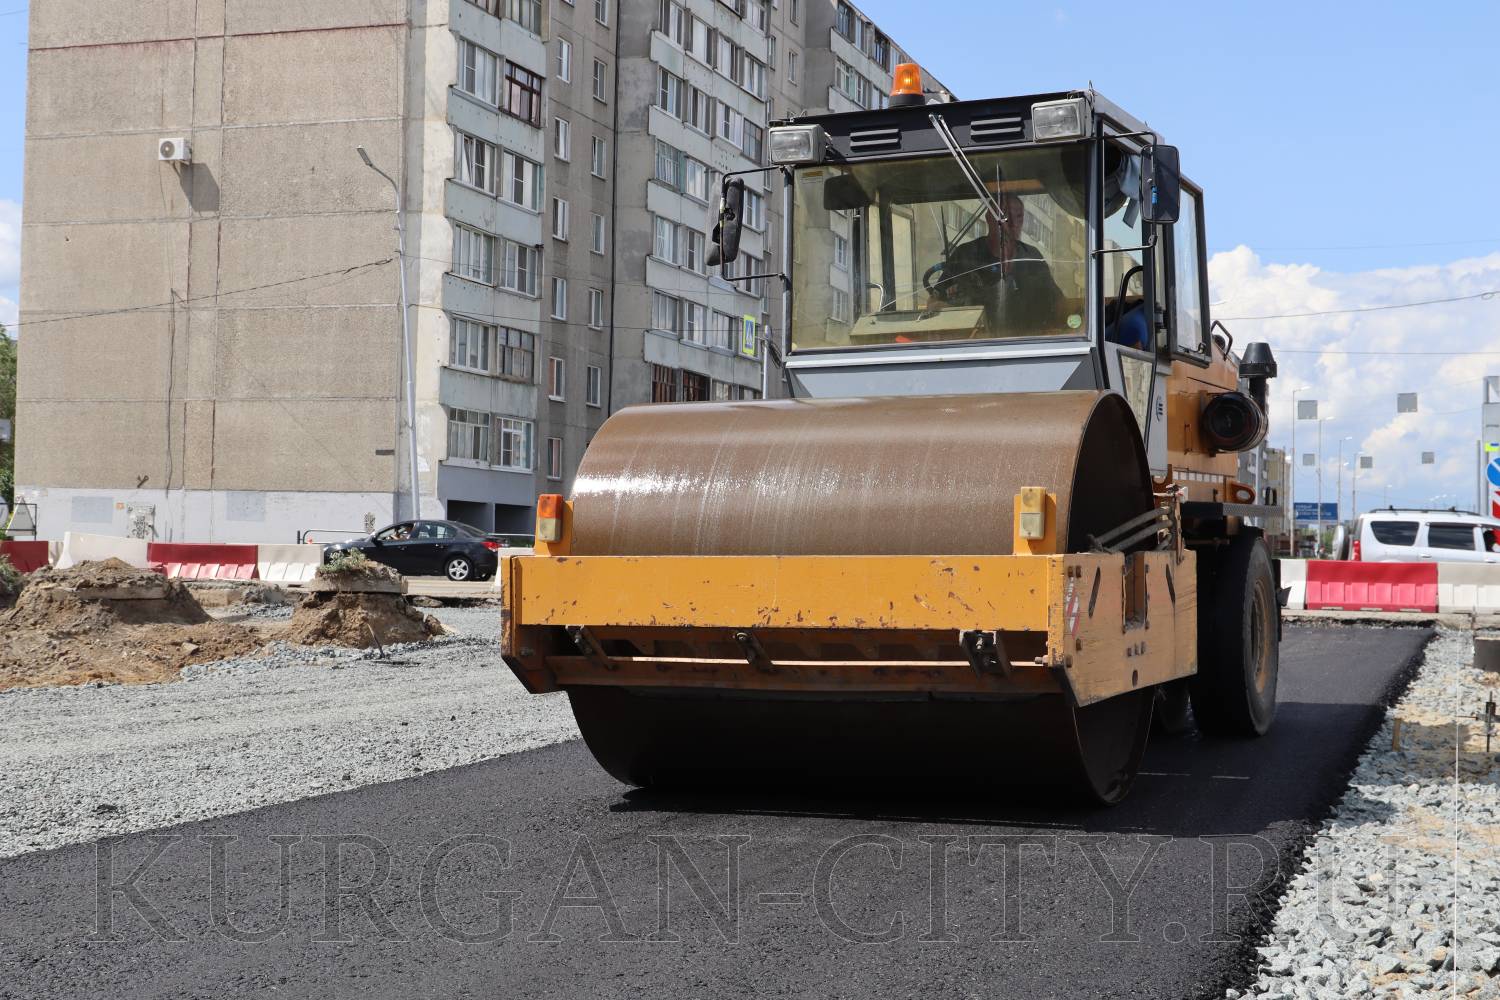 Новая многополосная автодорога по улице Бурова-Петрова повысит транспортную доступность курганских микрорайонов.